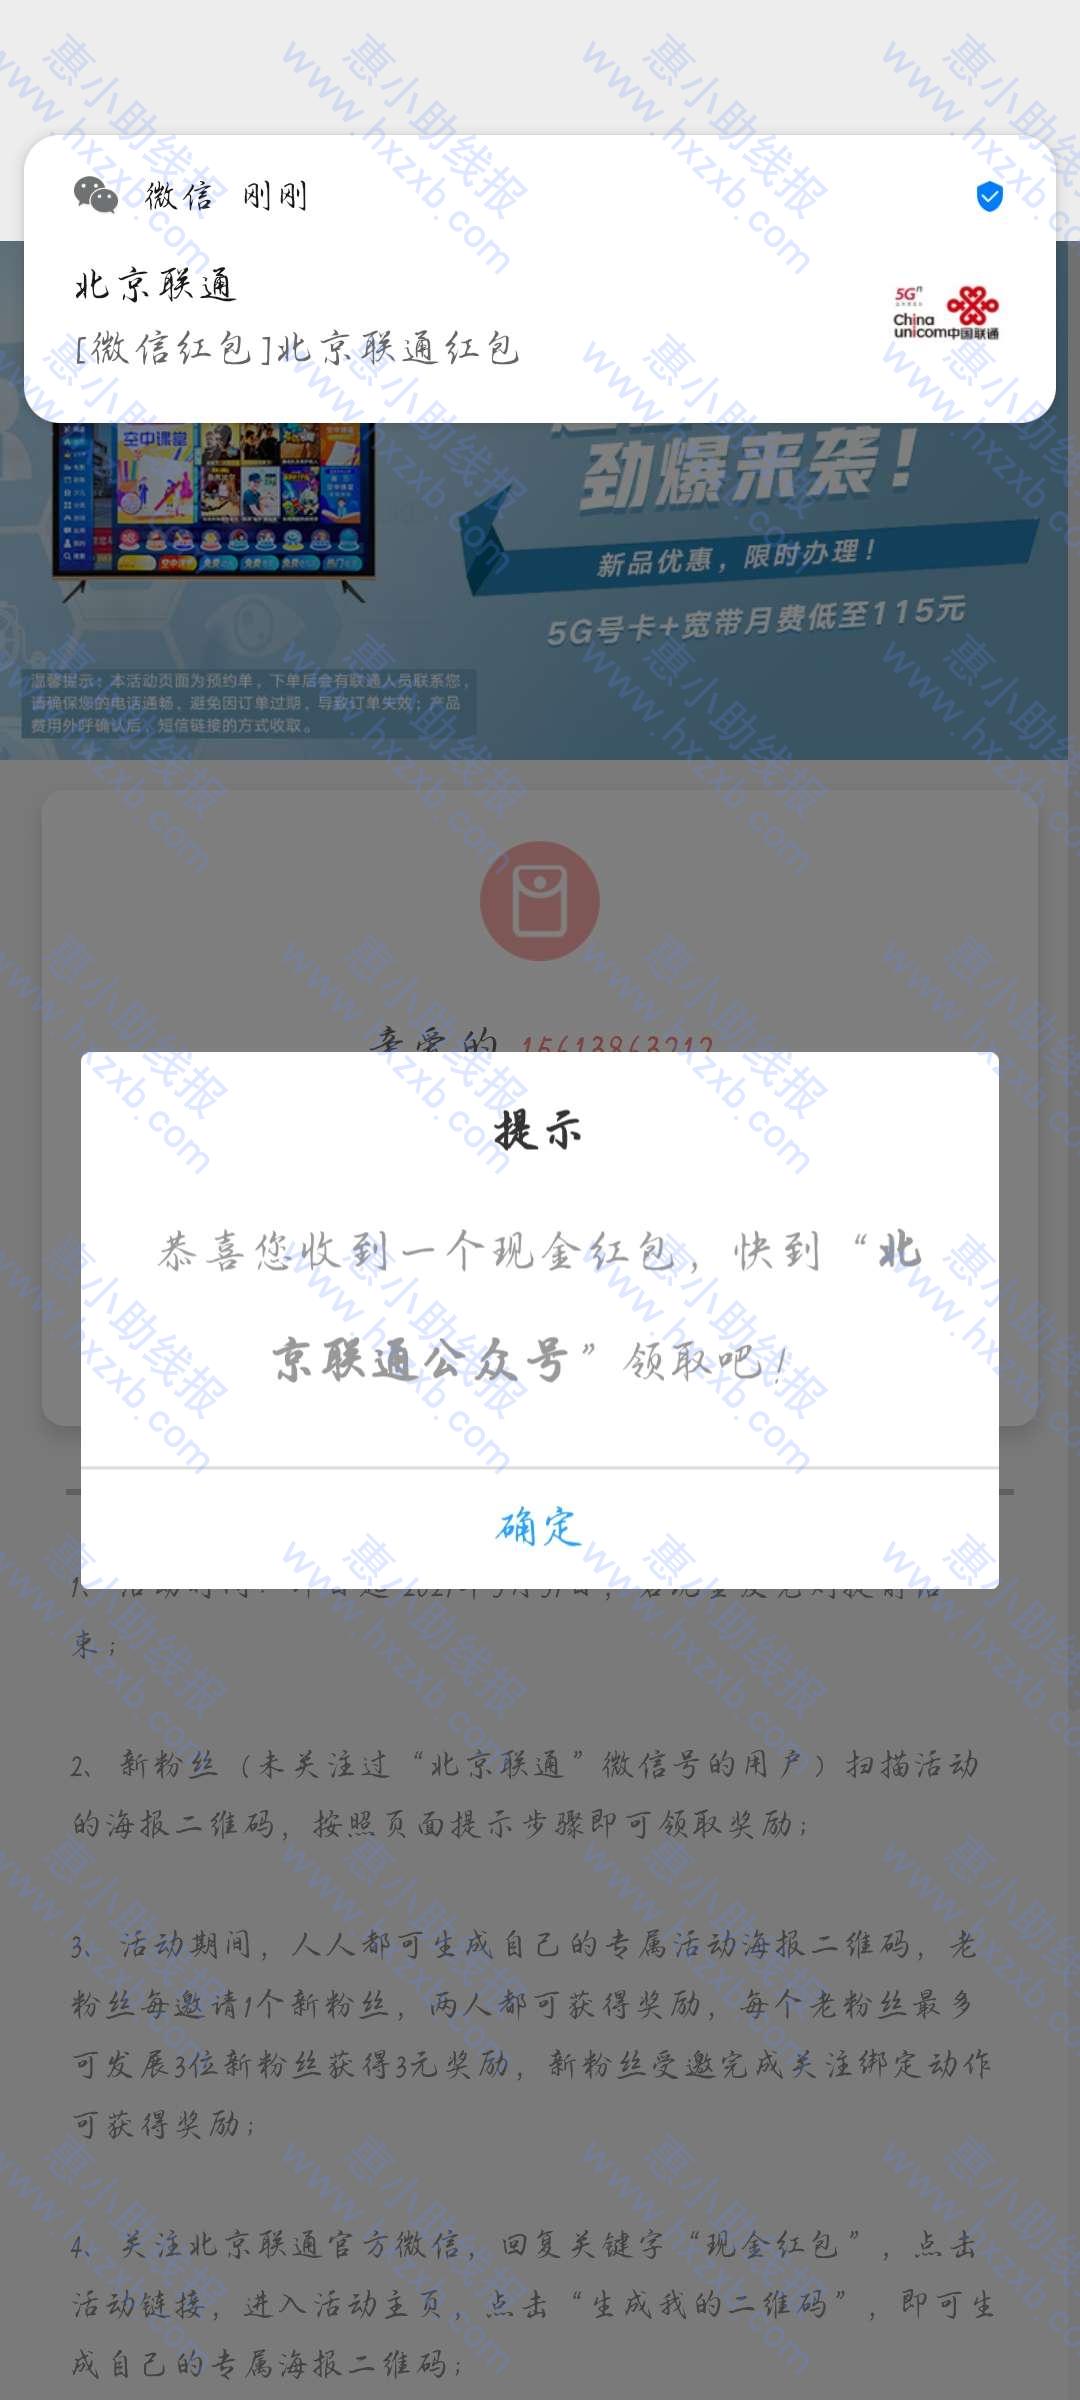 微信北京联通新用户领红包